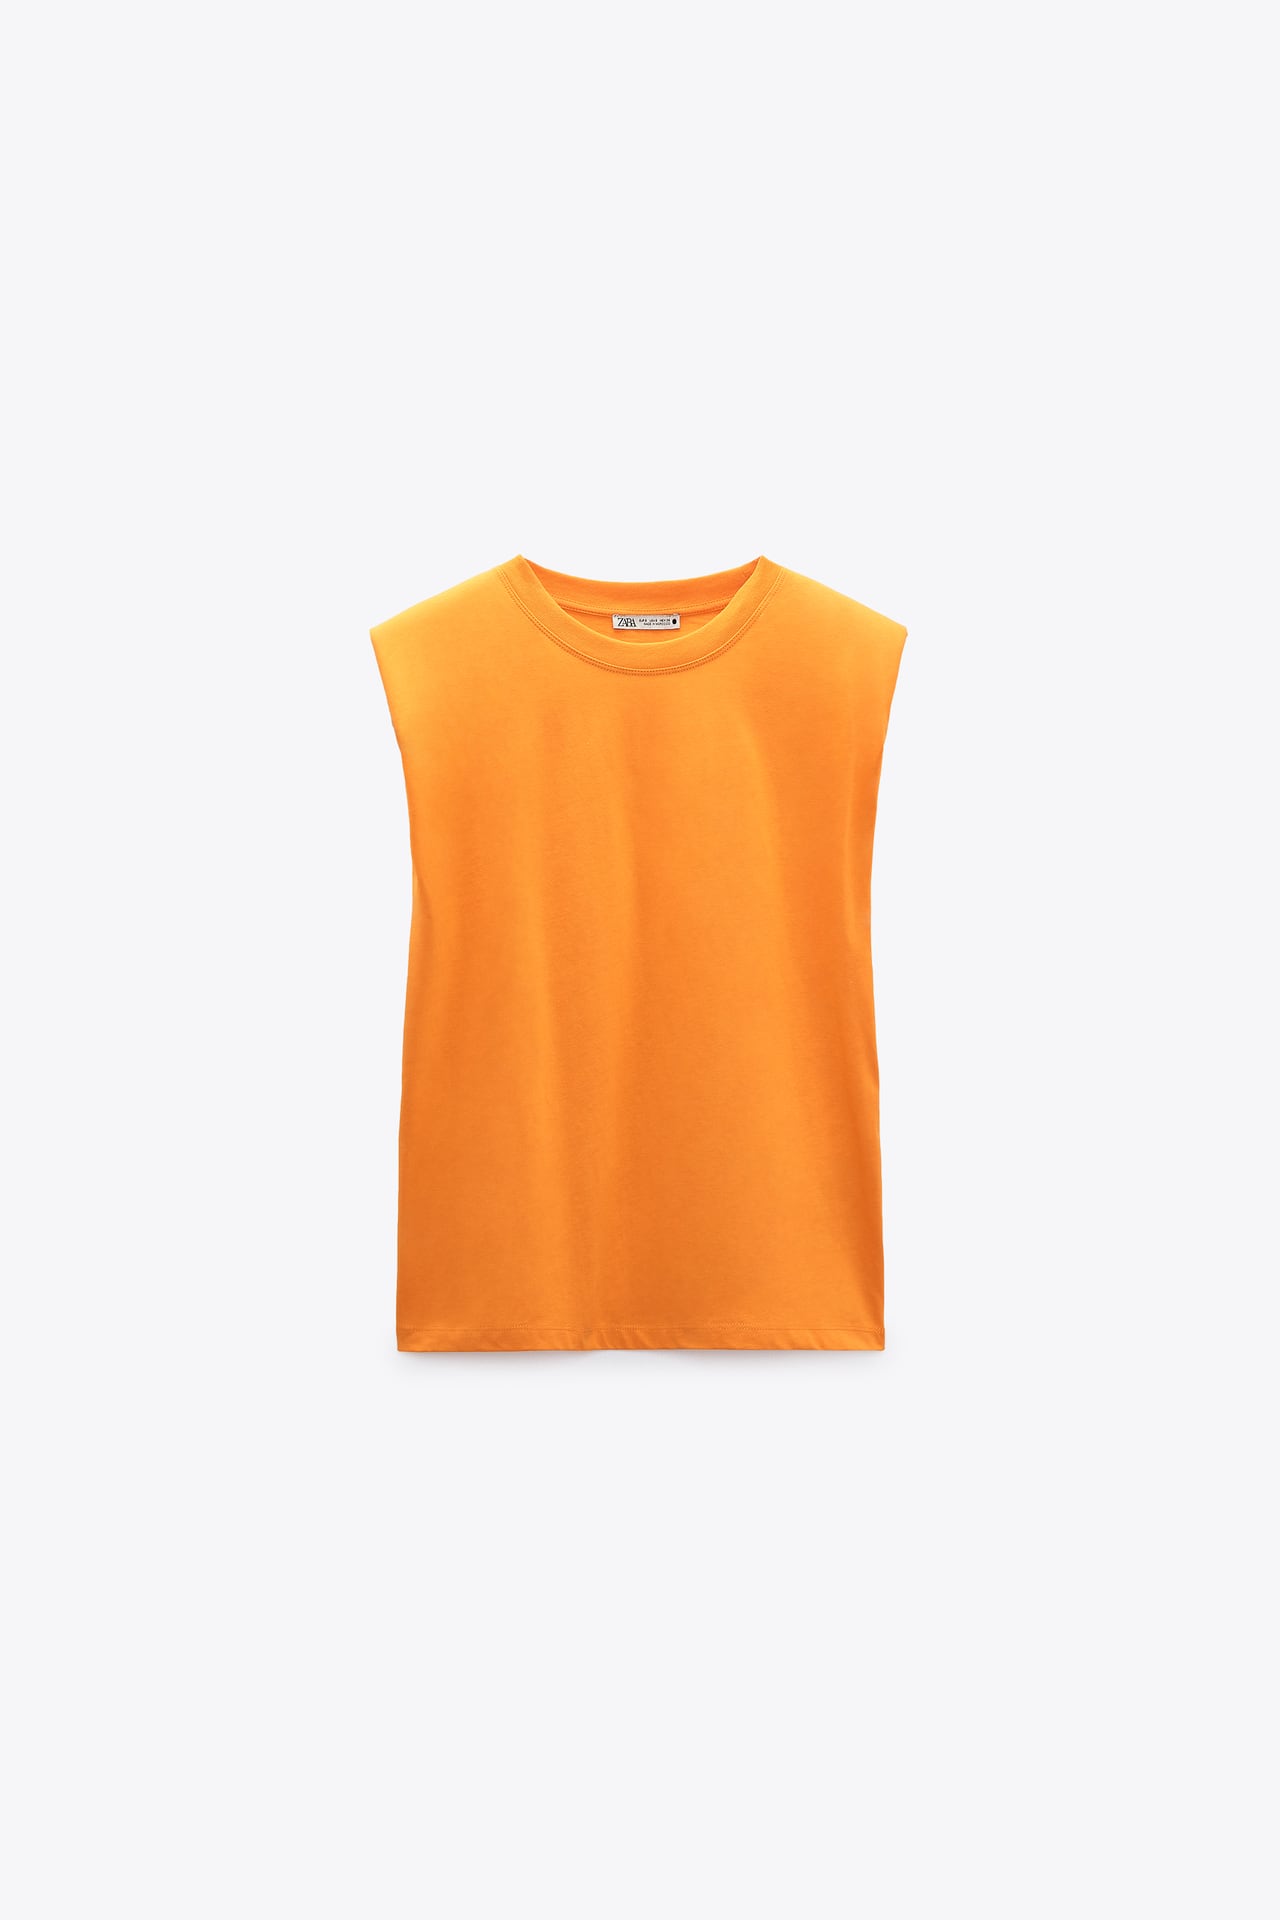 Camiseta con hombreras naranja potente